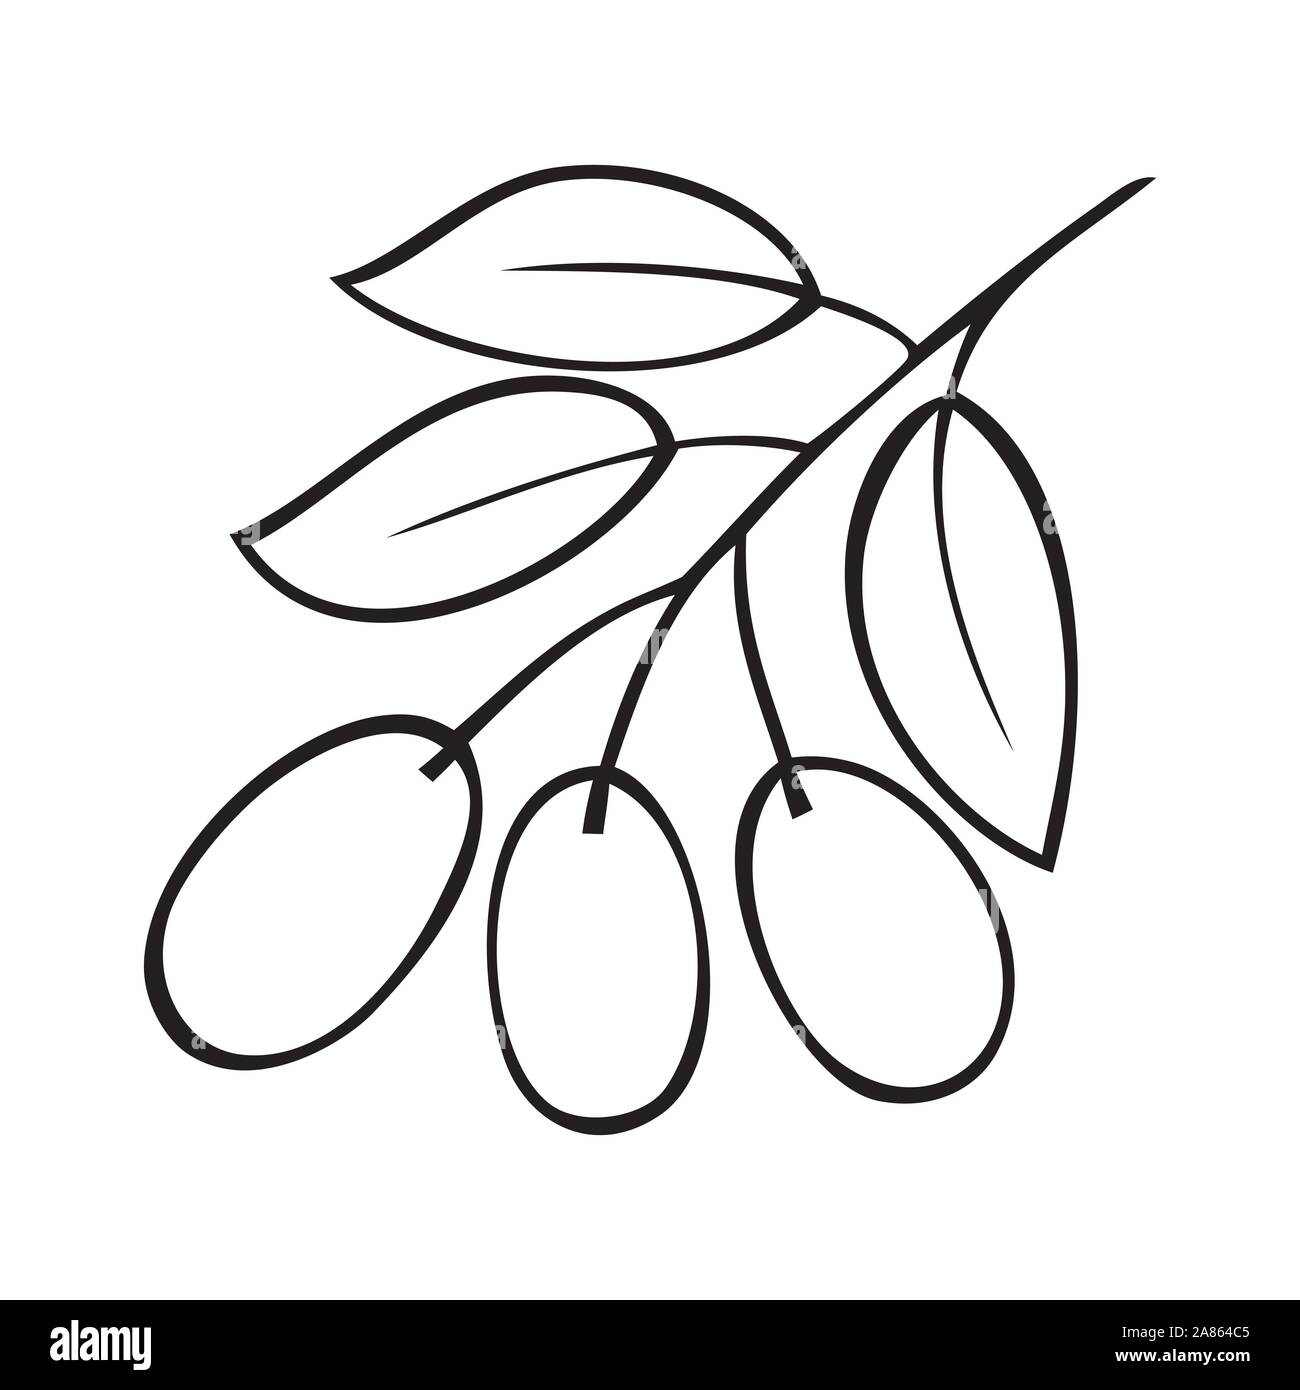 Vector illustration noir et blanc d'une branche de l'olivier Illustration de Vecteur